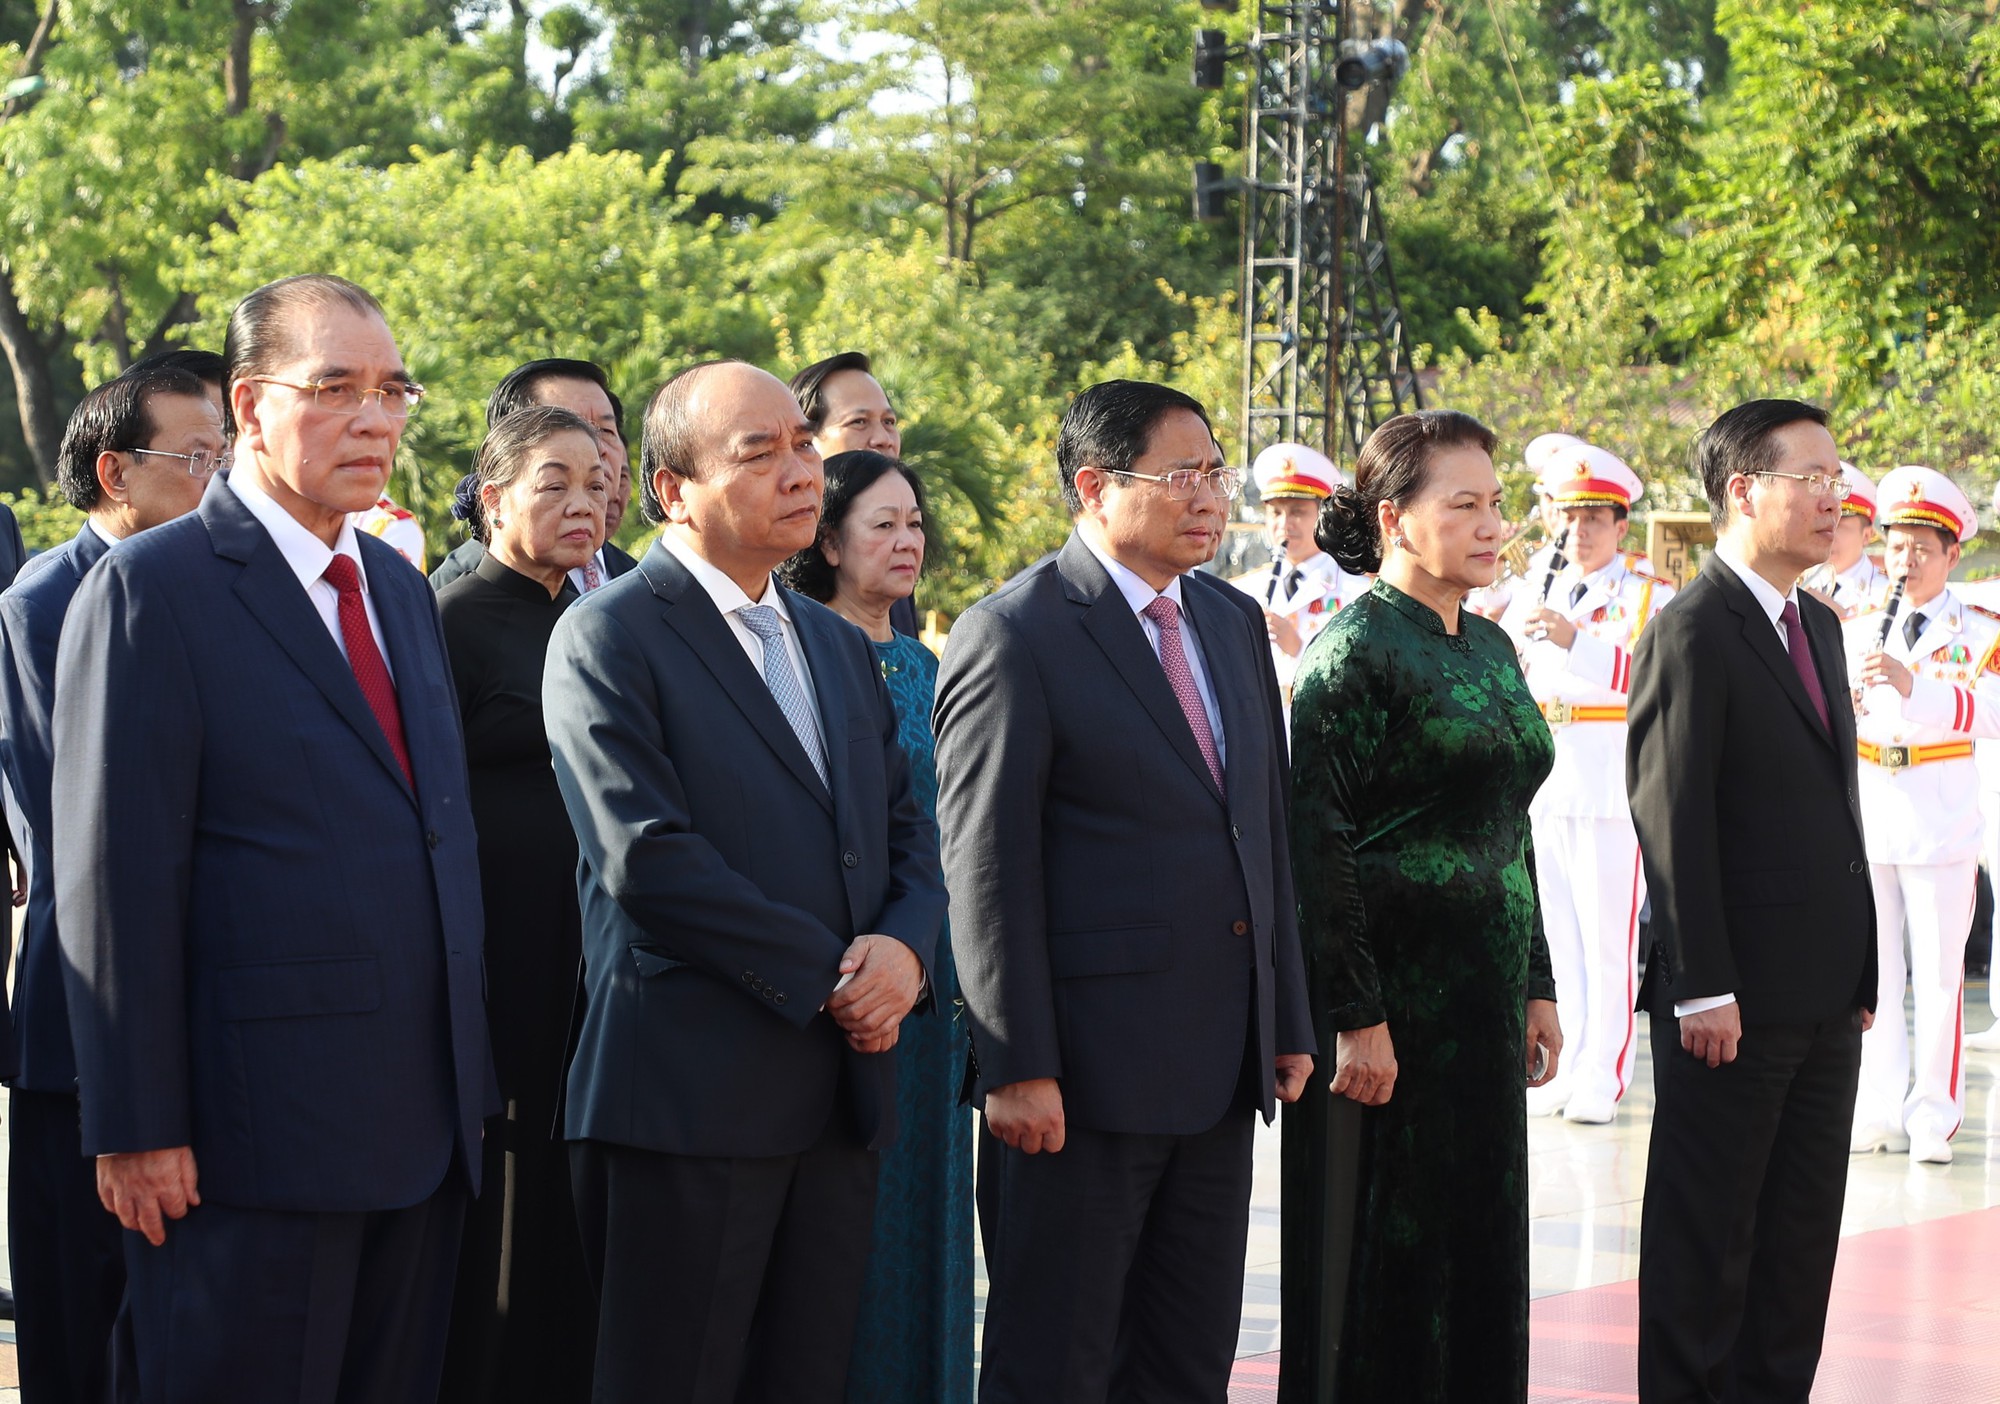 Chùm ảnh: Lãnh đạo Đảng, Nhà nước tưởng nhớ Chủ tịch Hồ Chí Minh và các Anh hùng liệt sĩ - Ảnh 2.